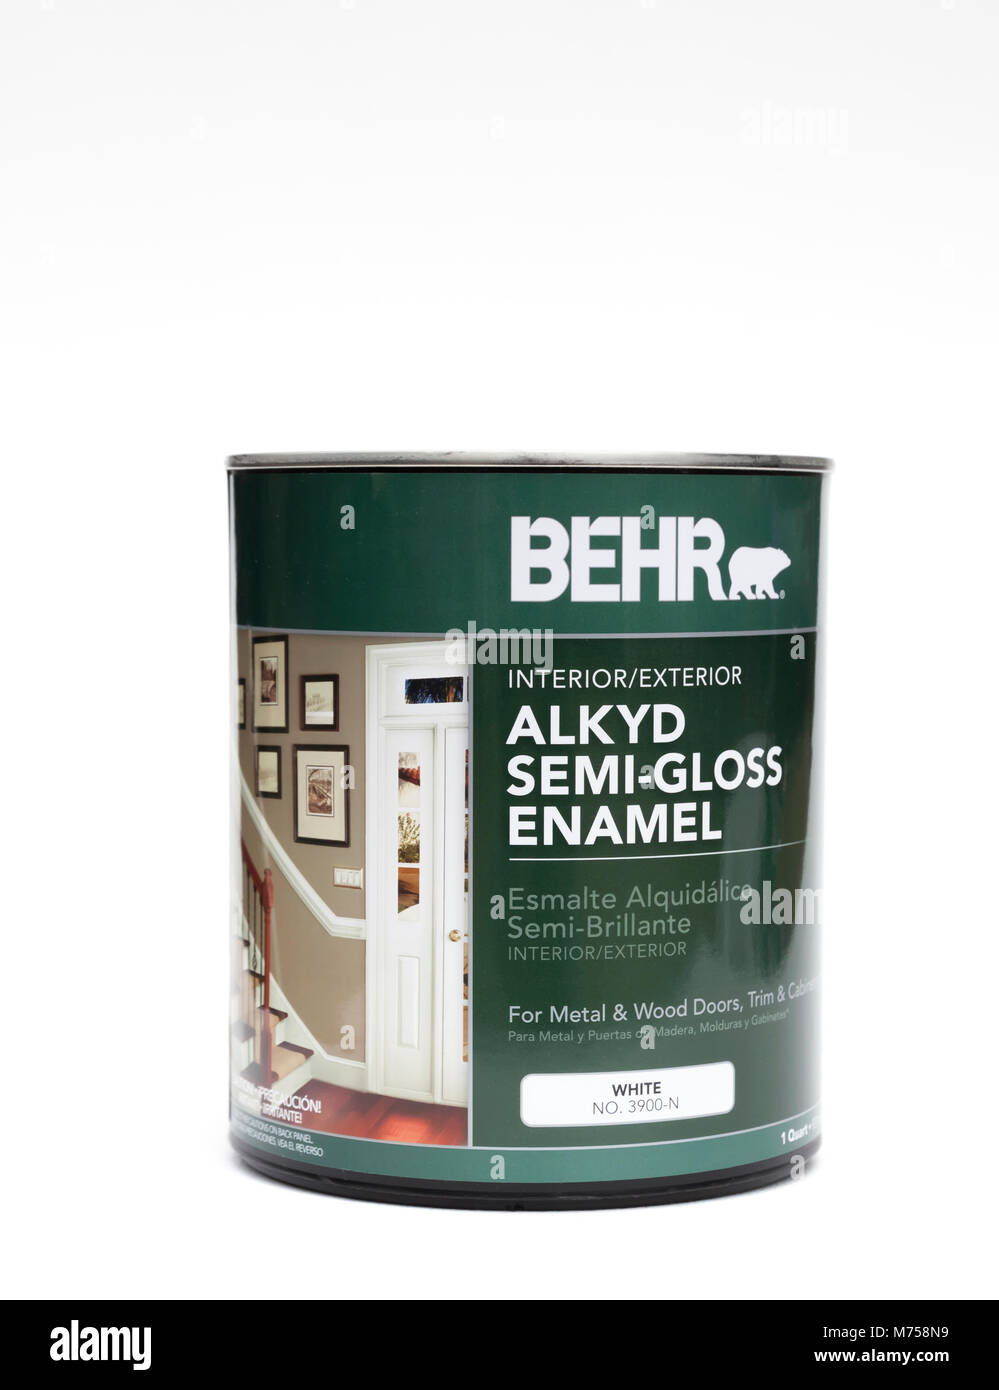 Behr Alkyd SemiGloss Enamel Paint for doors, trim